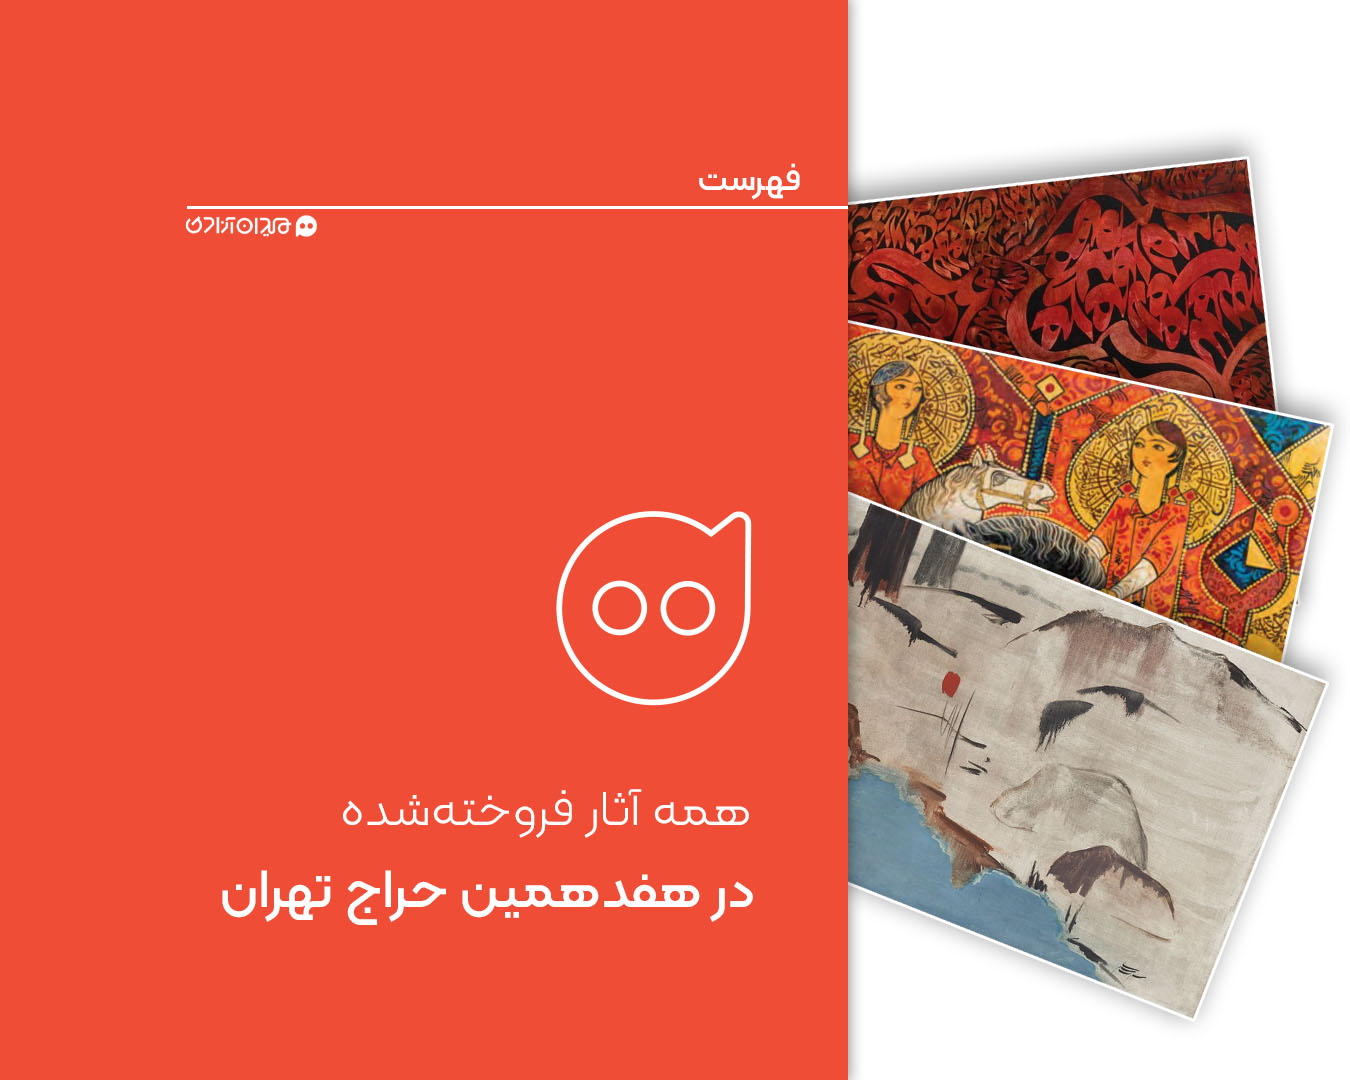 فهرست: همه آثار فروخته شده در هفدهمین حراج تهران + تصاویر و گزارشی از حواشی